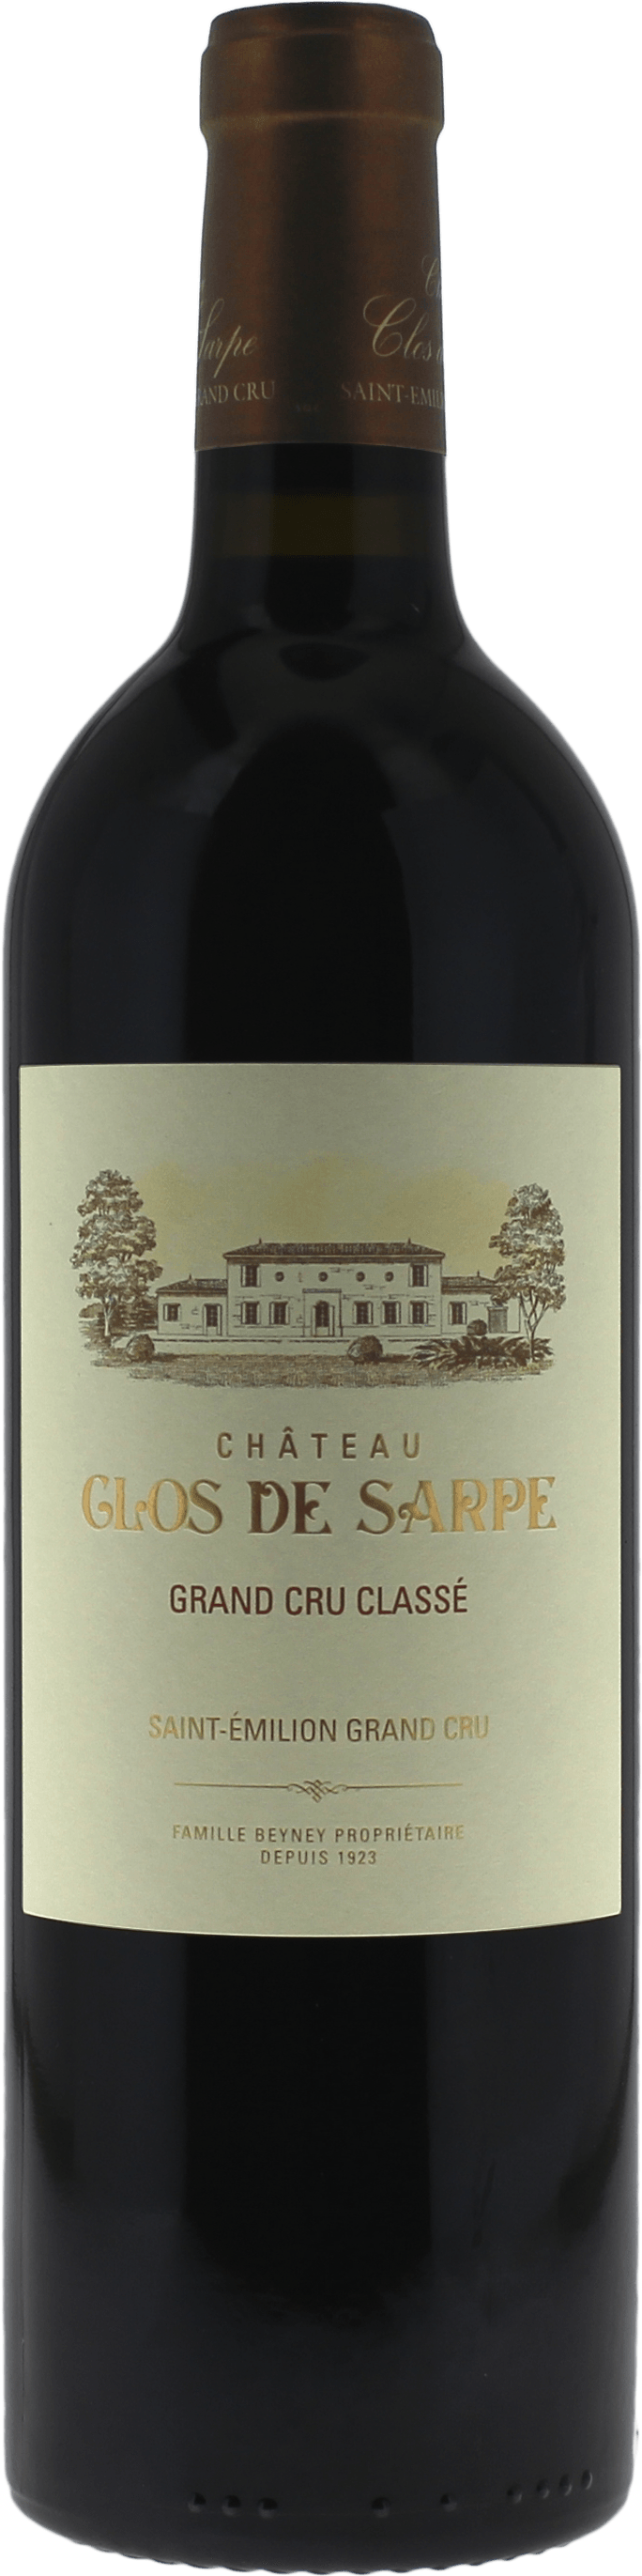 Clos de sarpe 2014 Grand Cru Class Saint-Emilion, Bordeaux rouge